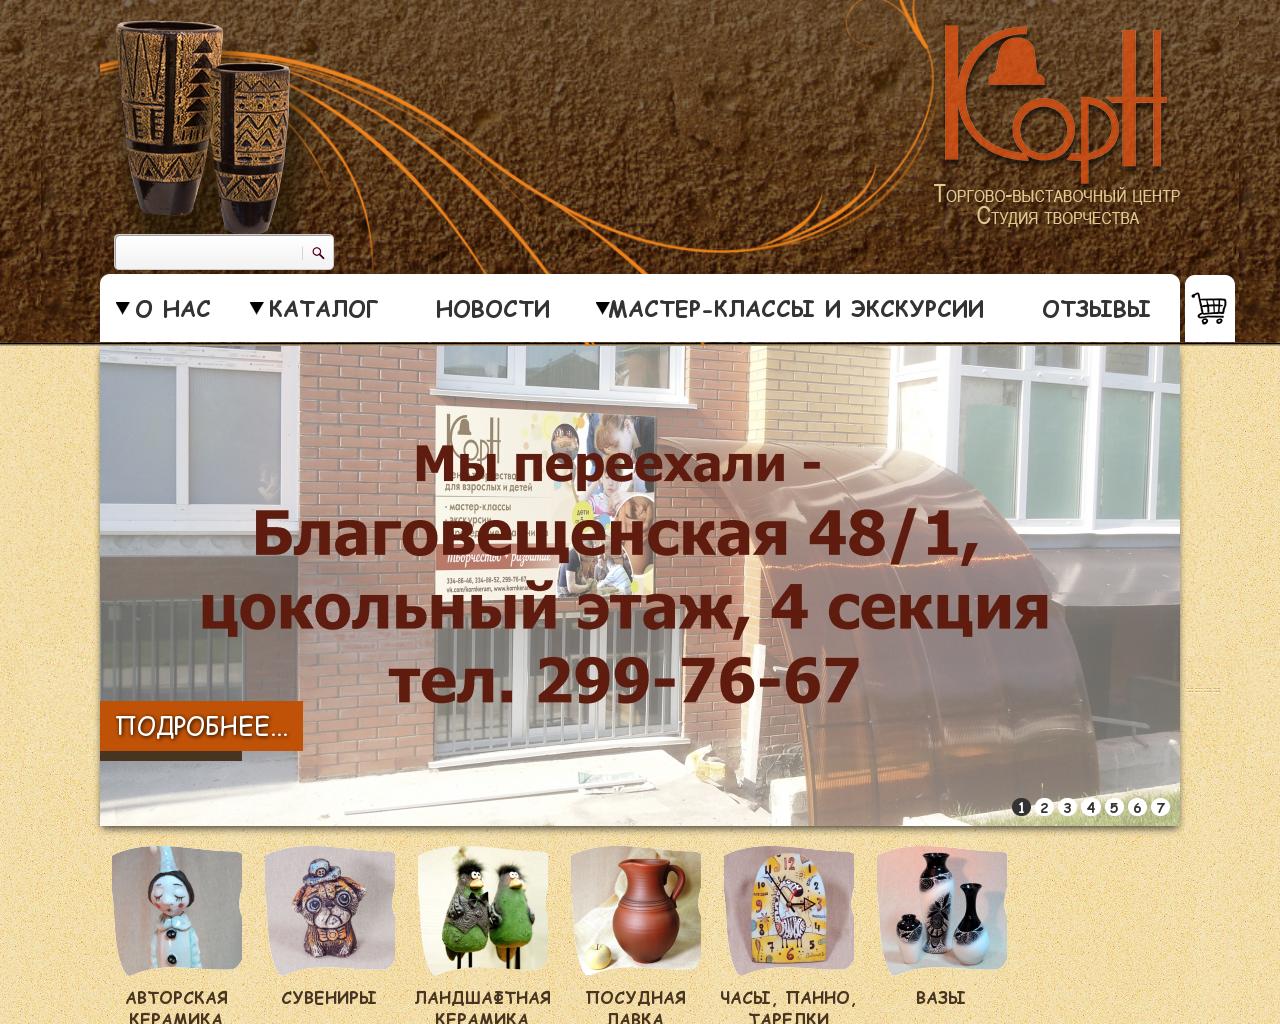 Изображение сайта kornkeram.ru в разрешении 1280x1024